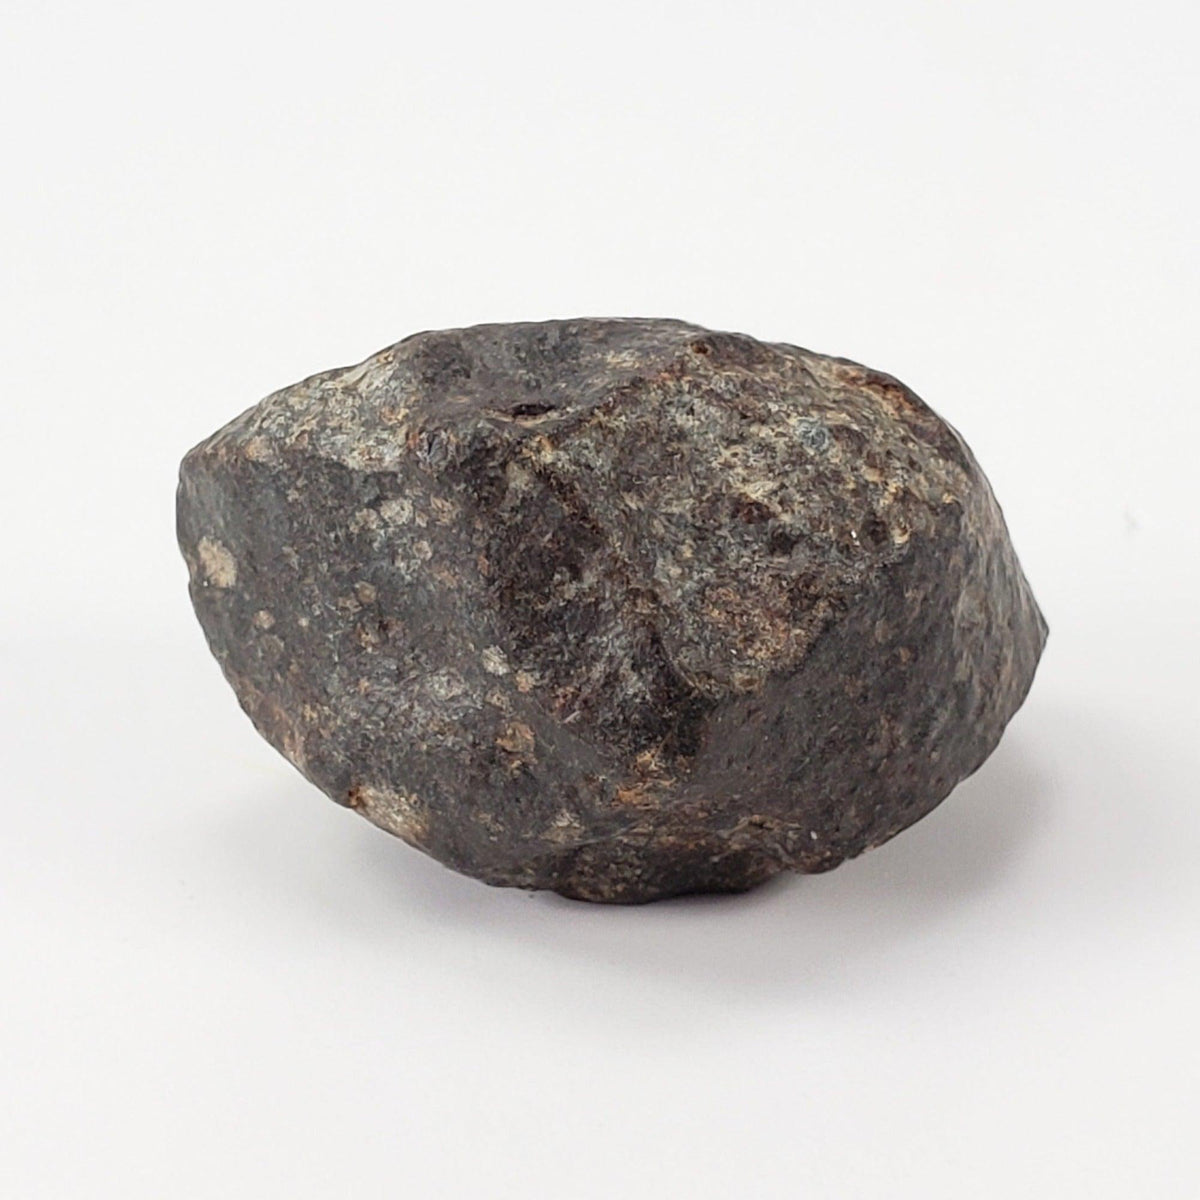 NWA 869 Meteorite | 10.59 Gr | Individual | L3-6 Chondrite | Crusted Specimen